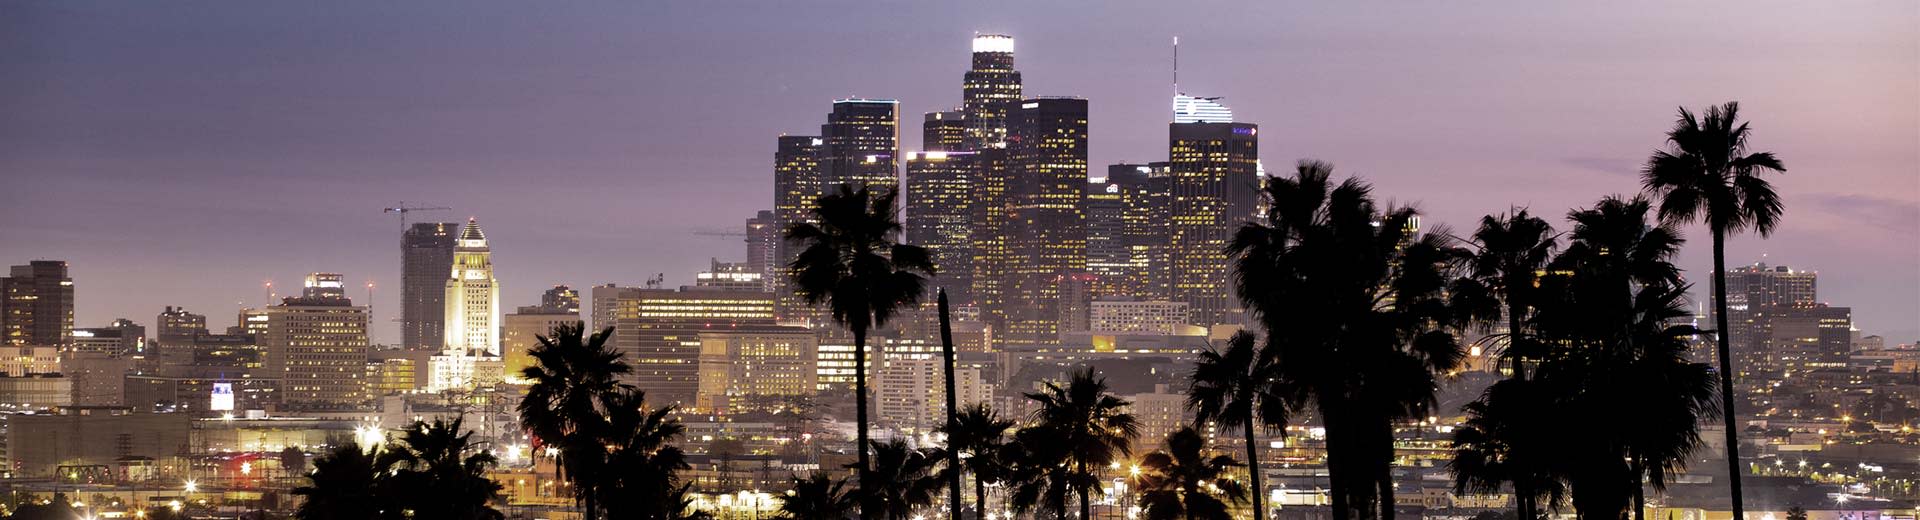 Les palmiers la nuit et les gratte-ciel du centre-ville de Los Angeles allument le ciel.